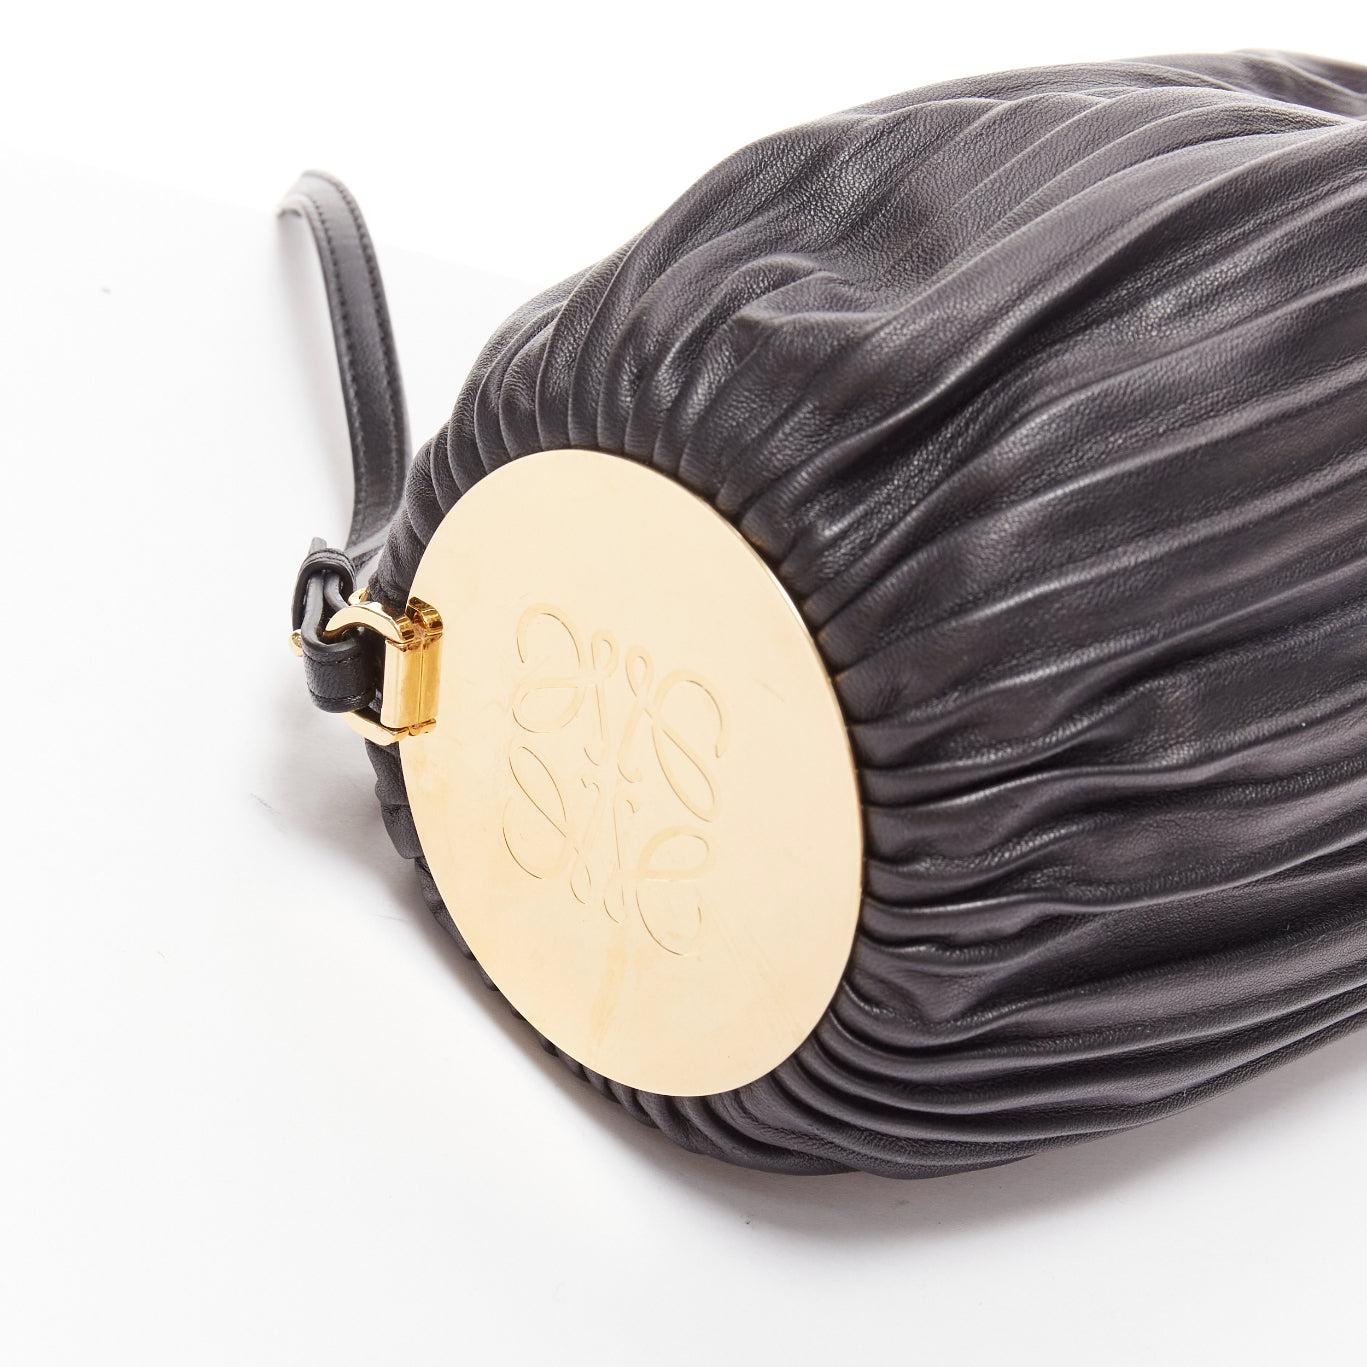 LOEWE Bracelet Pouch black pleated leather gold anagram logo wrist shoulder bag For Sale 3